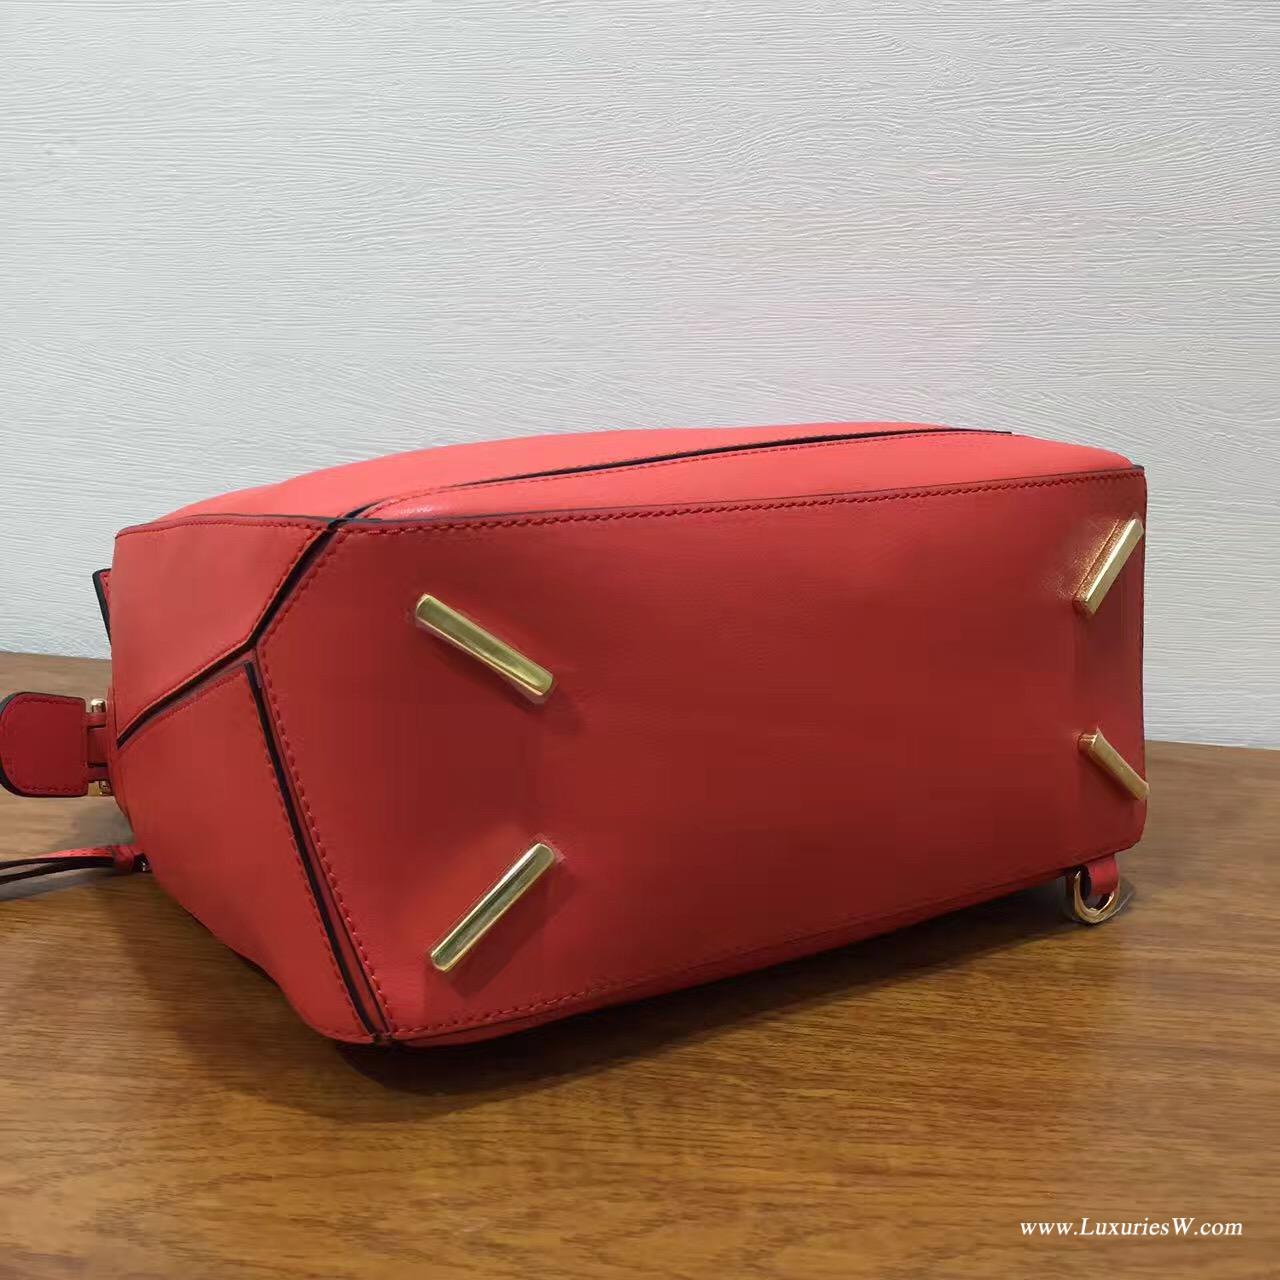 羅意威LOEWE包包 中號 Puzzle Bag  橘红色 30cm 折疊單肩手提幾何包